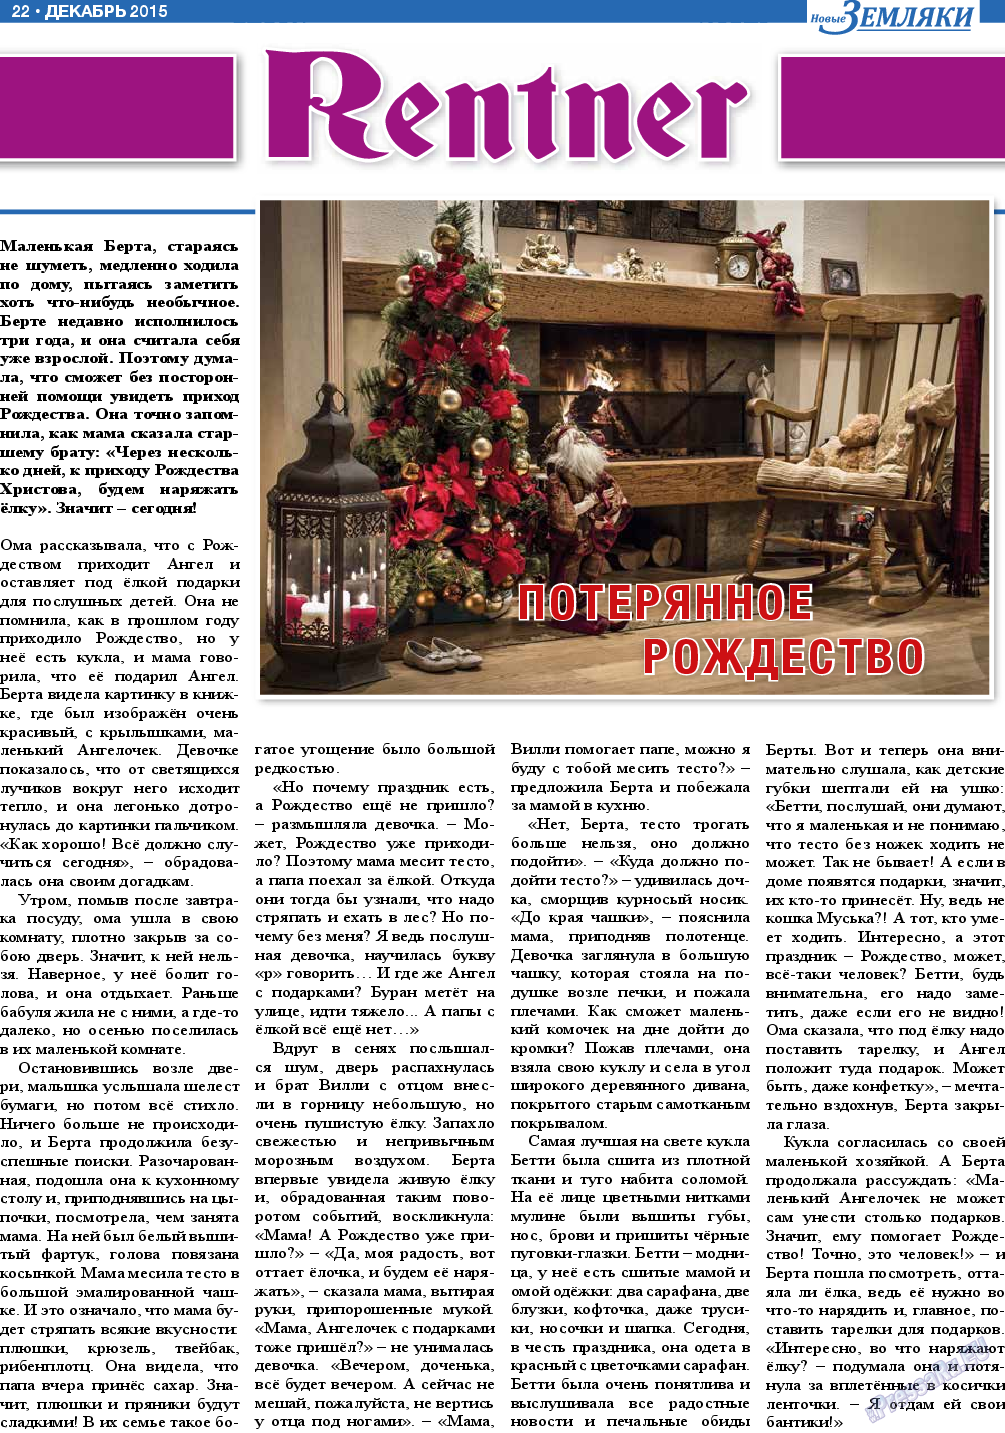 Новые Земляки, газета. 2015 №12 стр.22